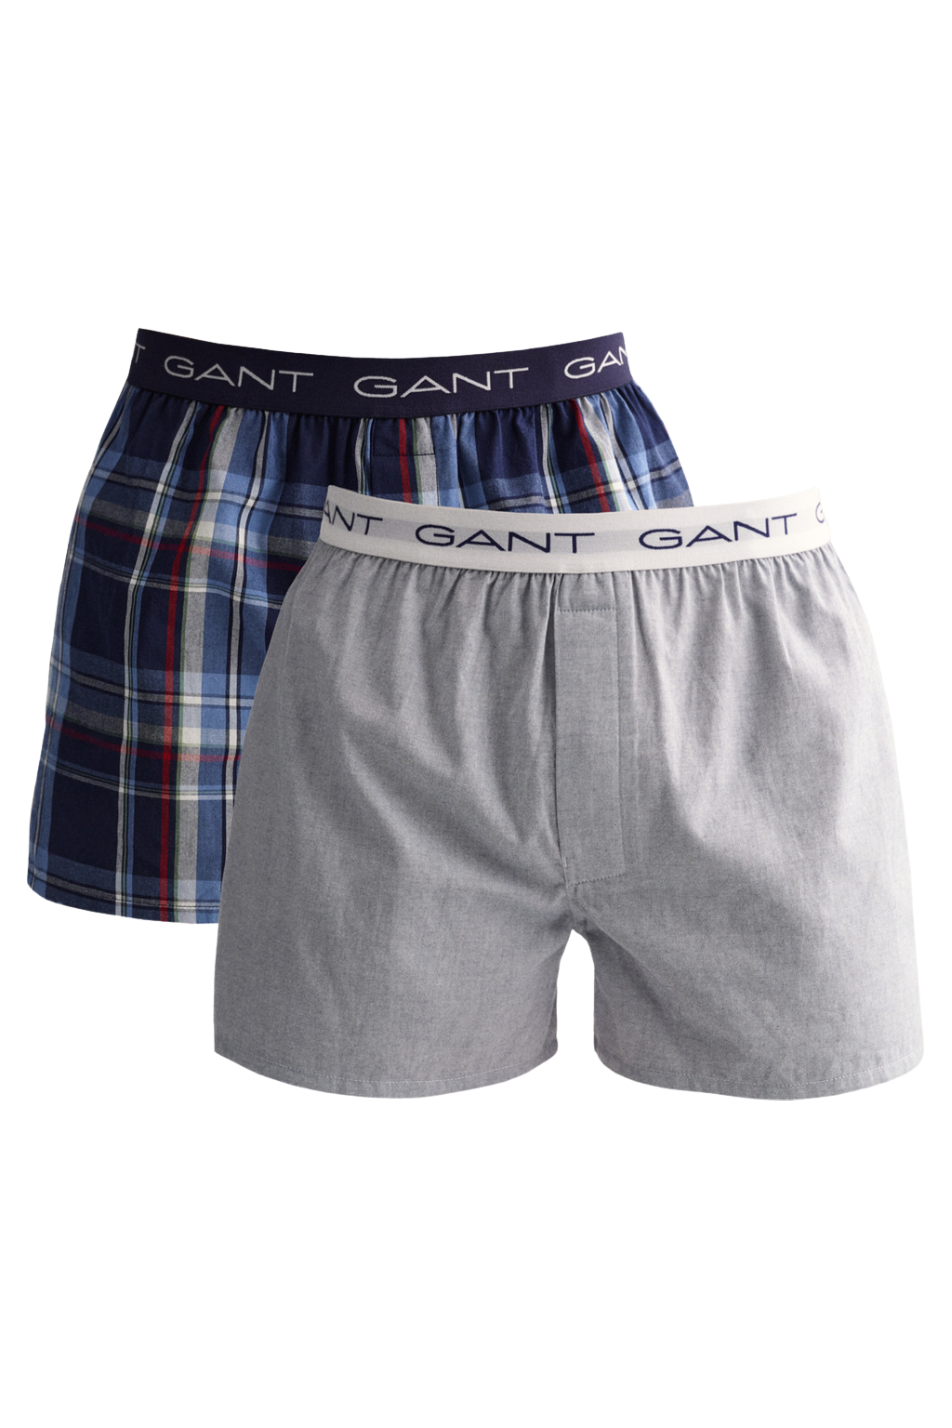 Gant 2 Pack Men's Woven Boxer Shorts